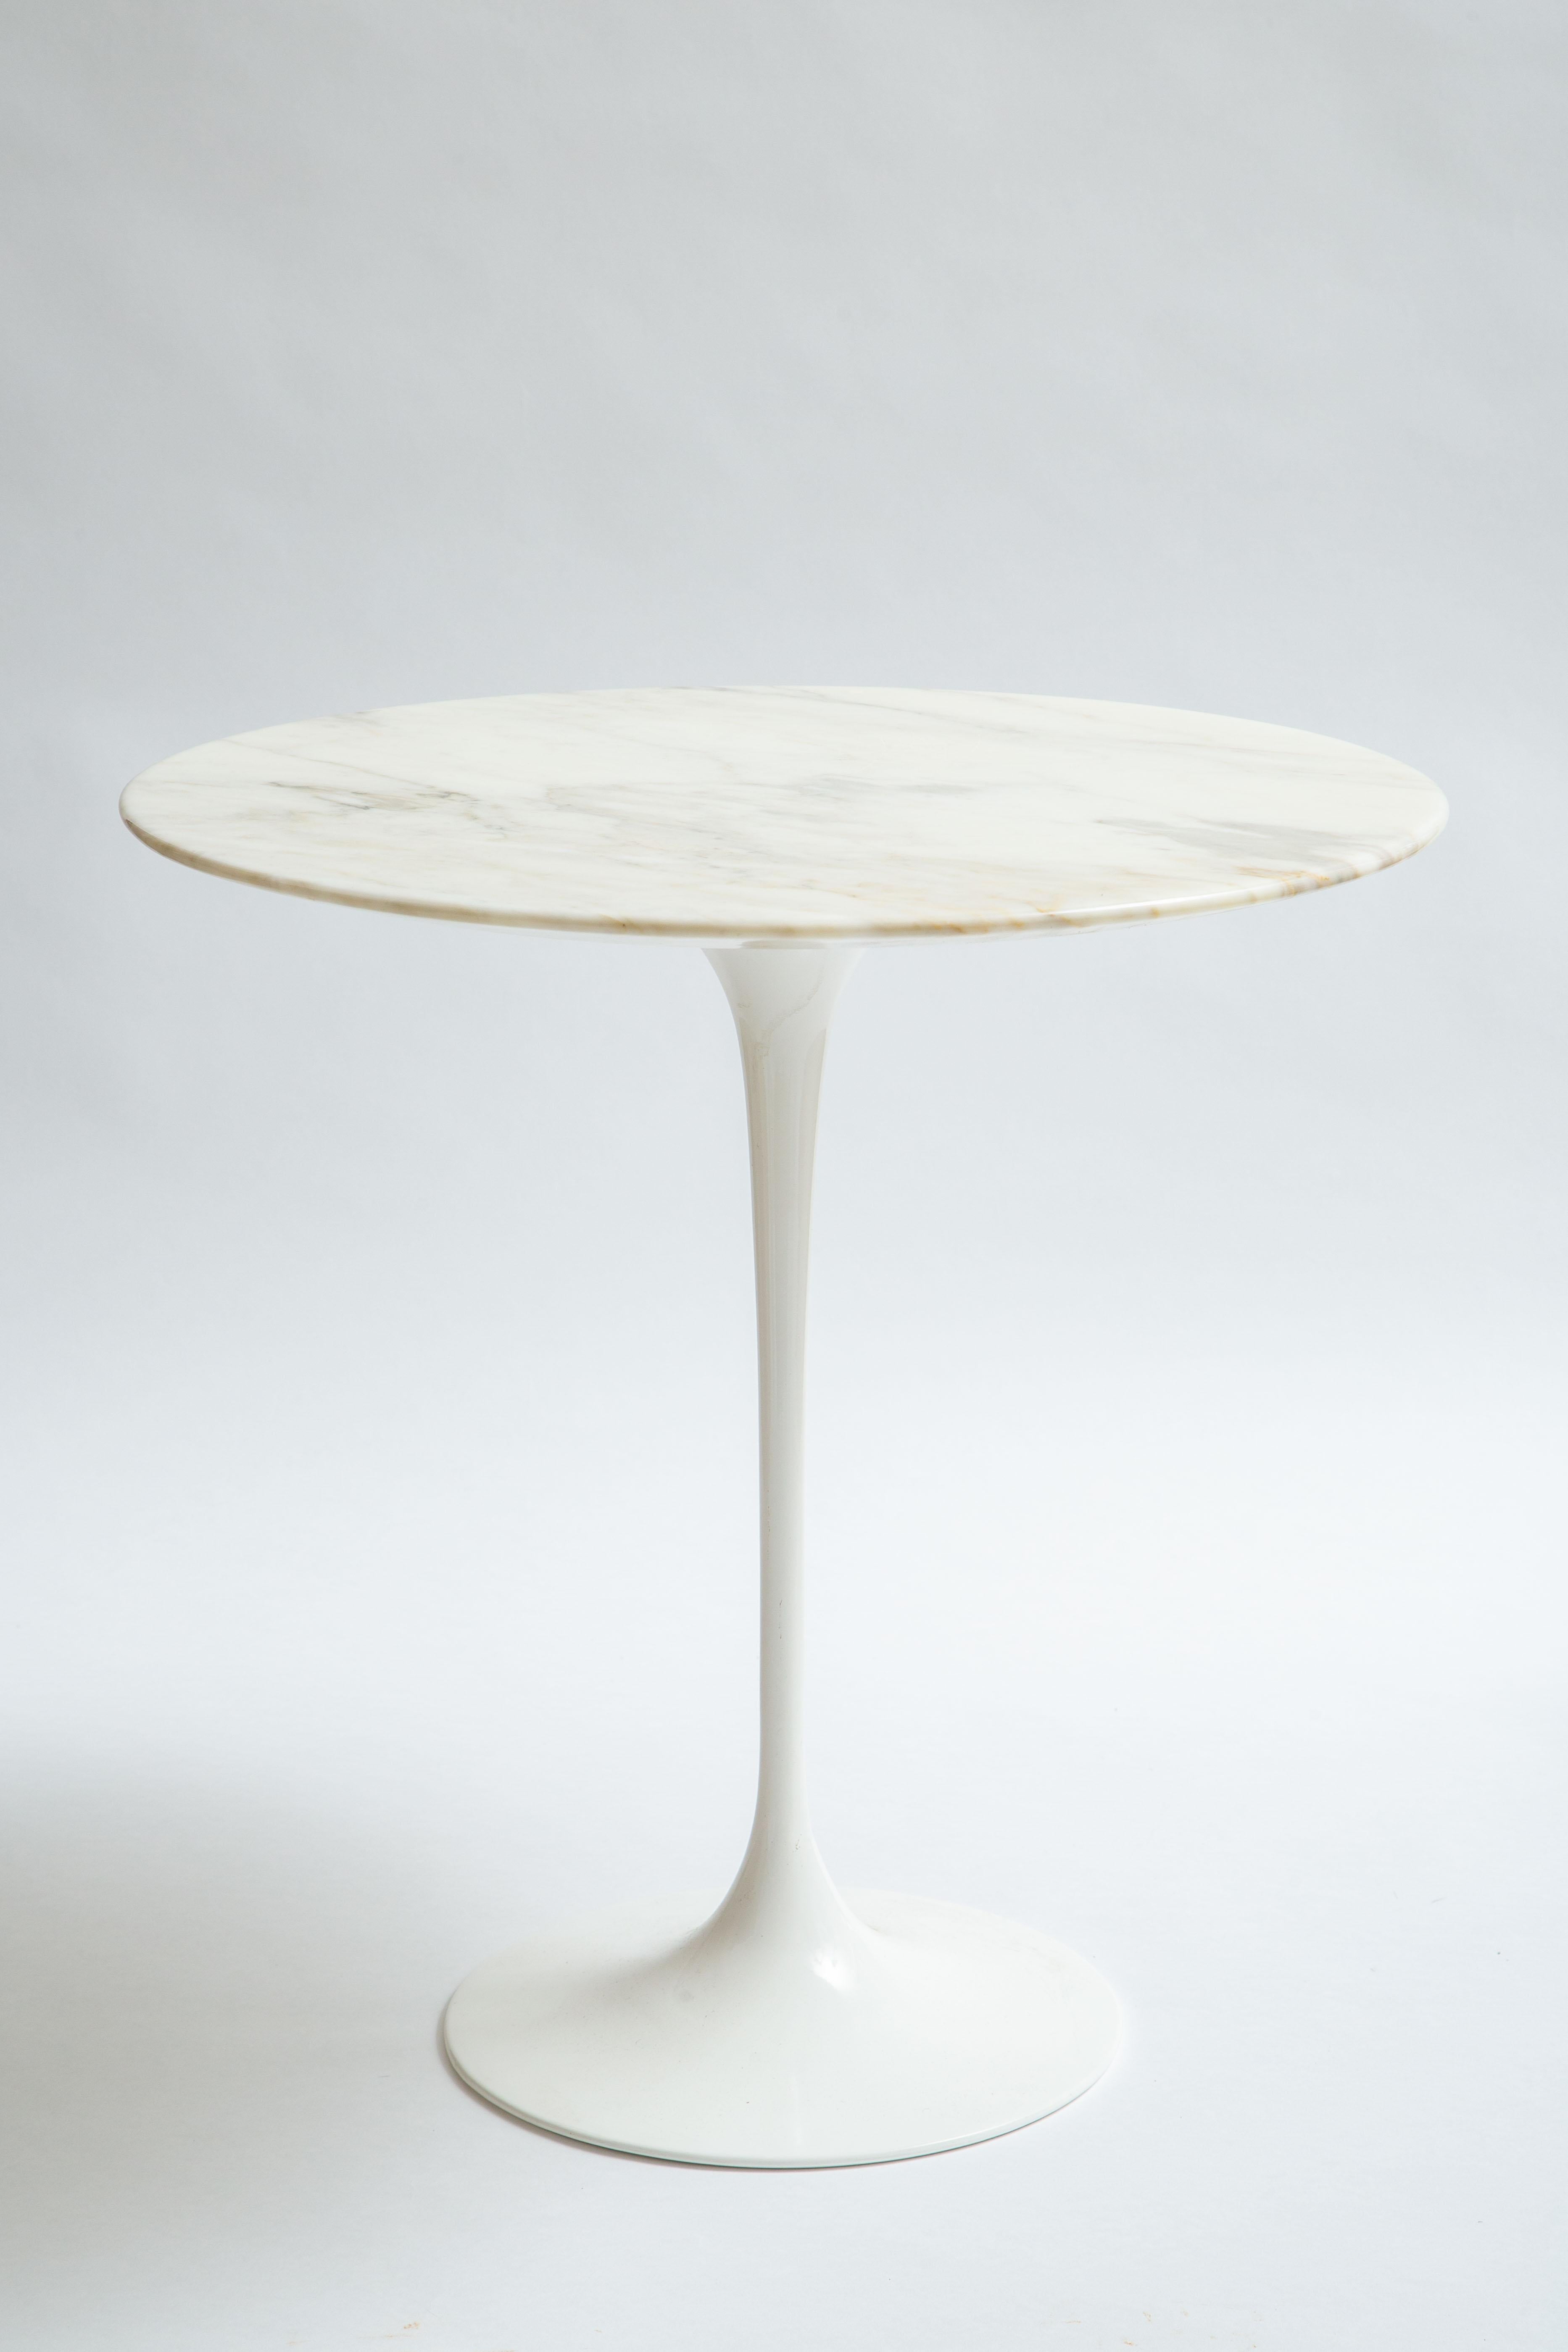 Eero Saarinen Marble Top Table For Sale 1